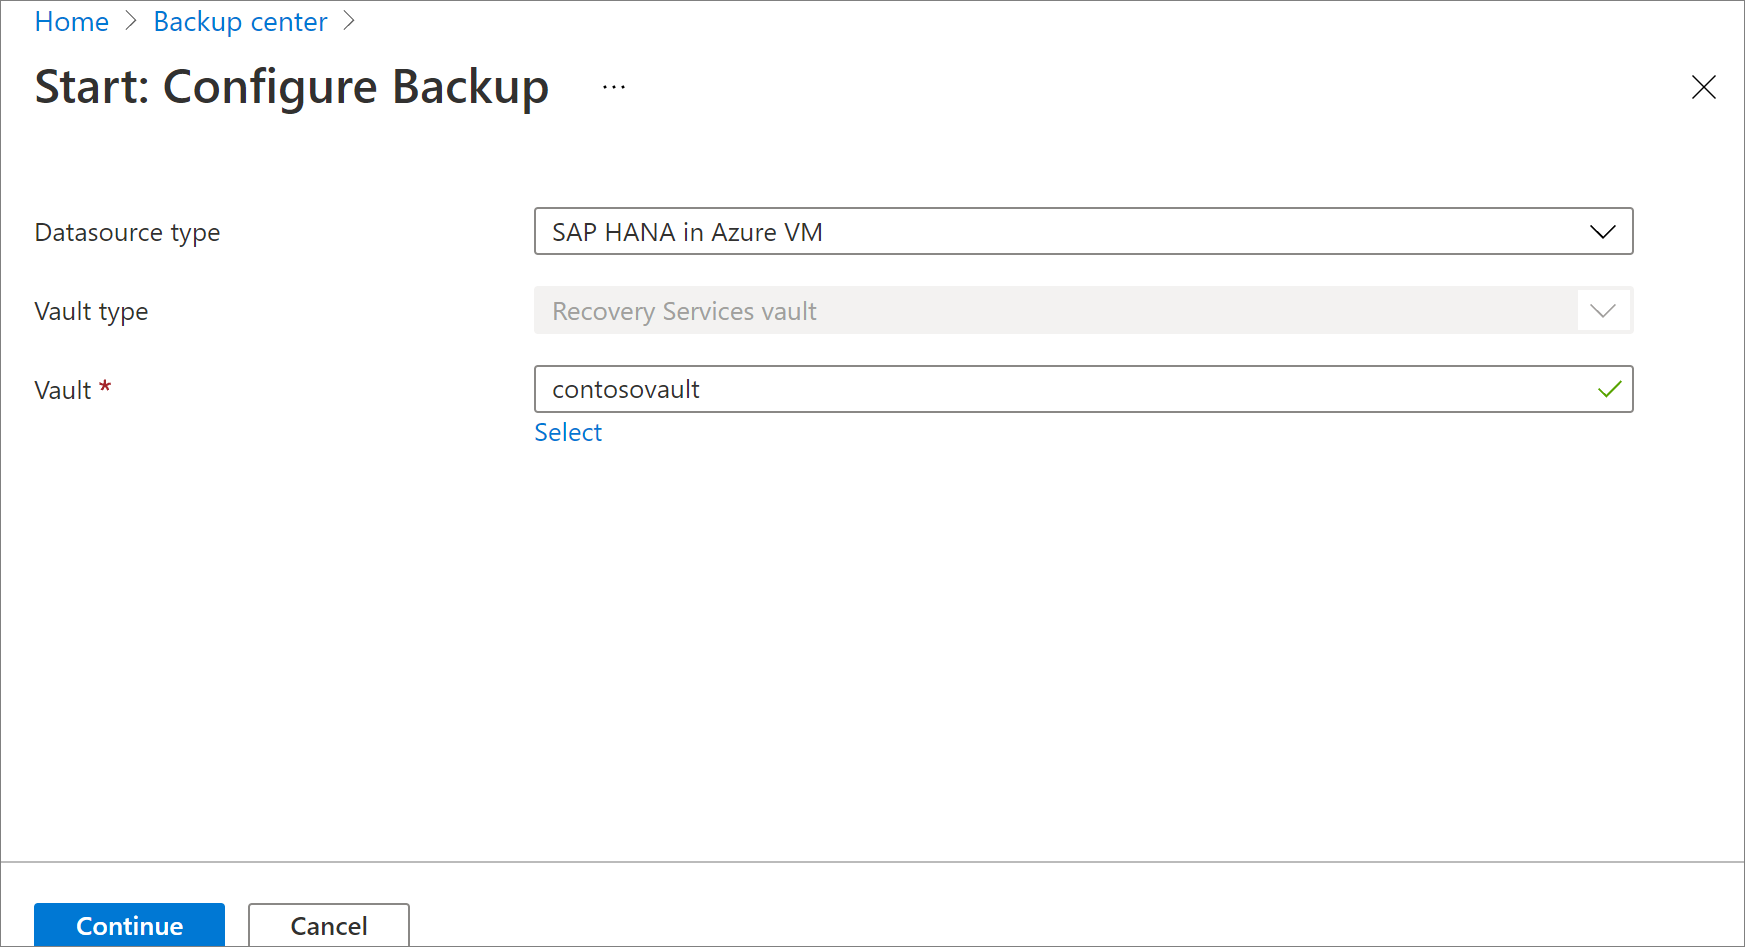 此螢幕快照顯示在 Azure VM 中選取 SAP HANA 作為數據源類型的位置。